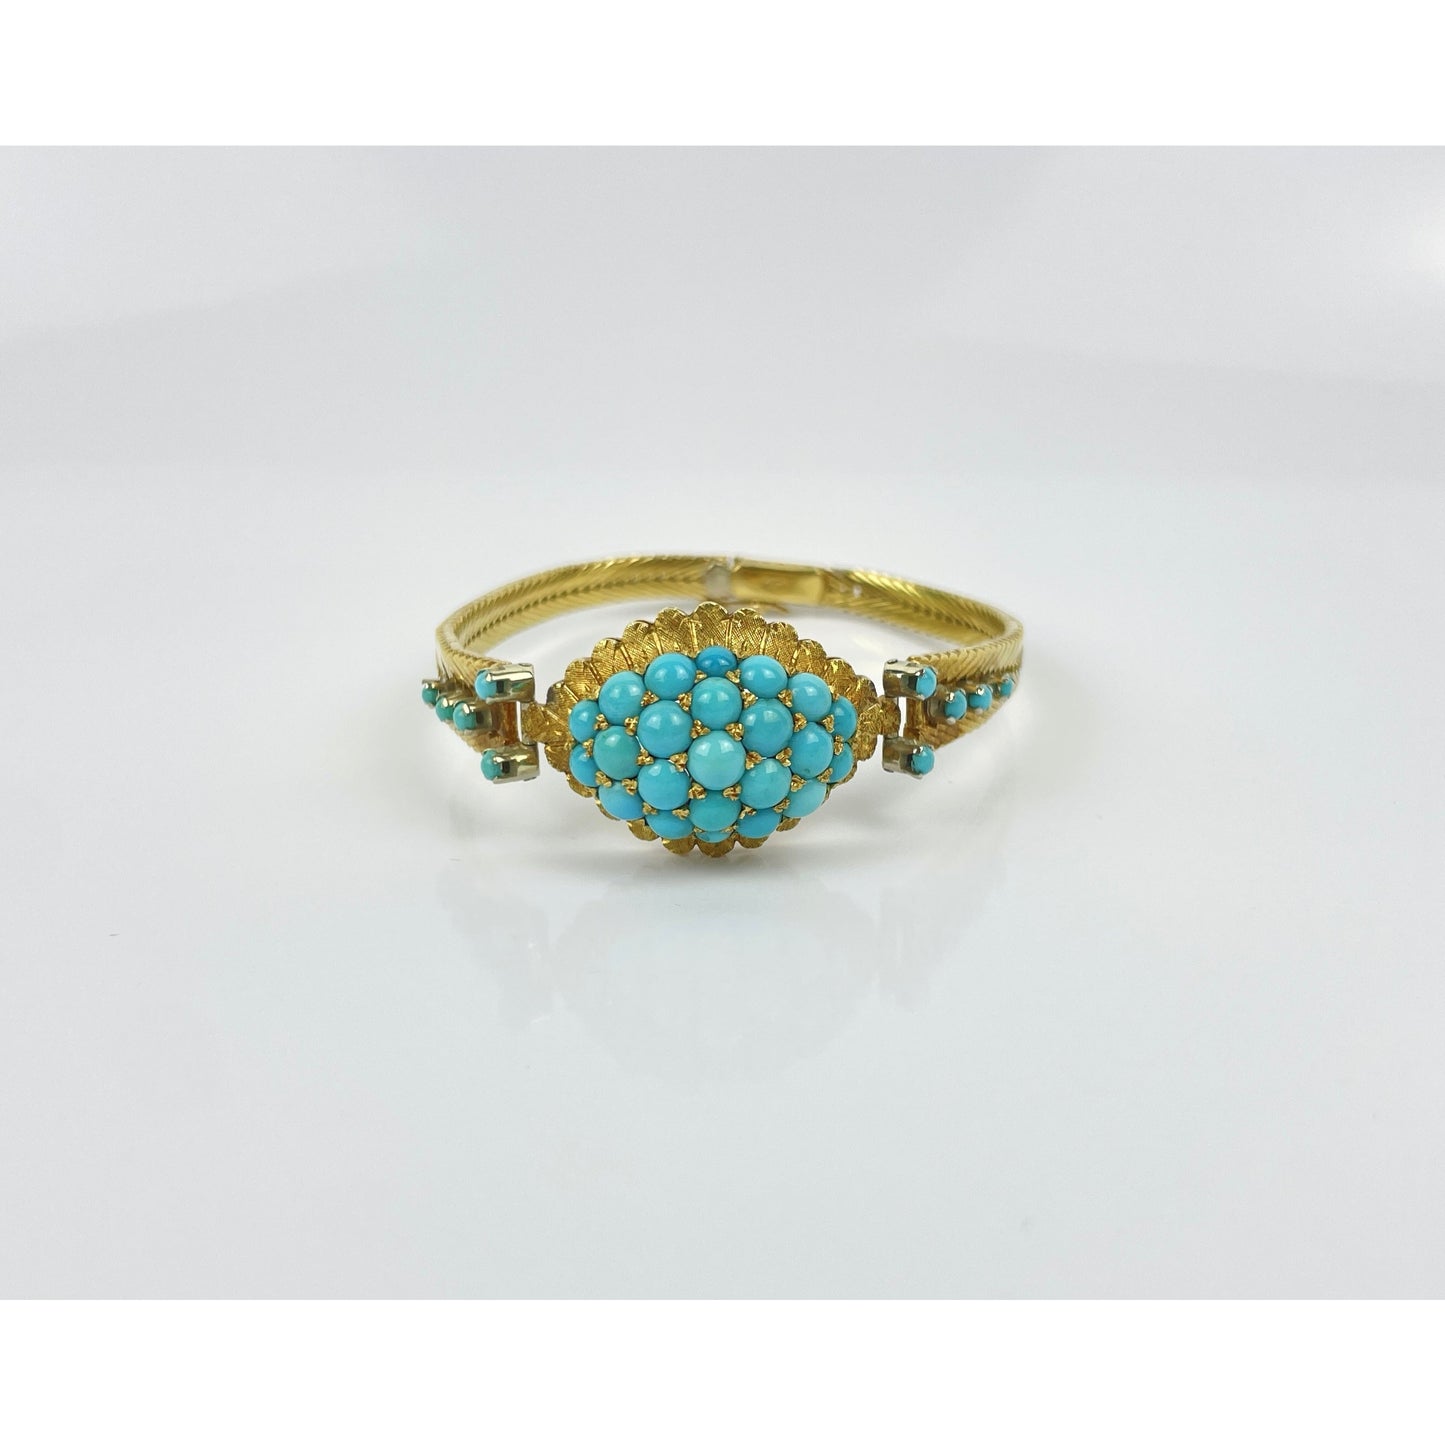 18k Gold Turquoise Bead Bracelet